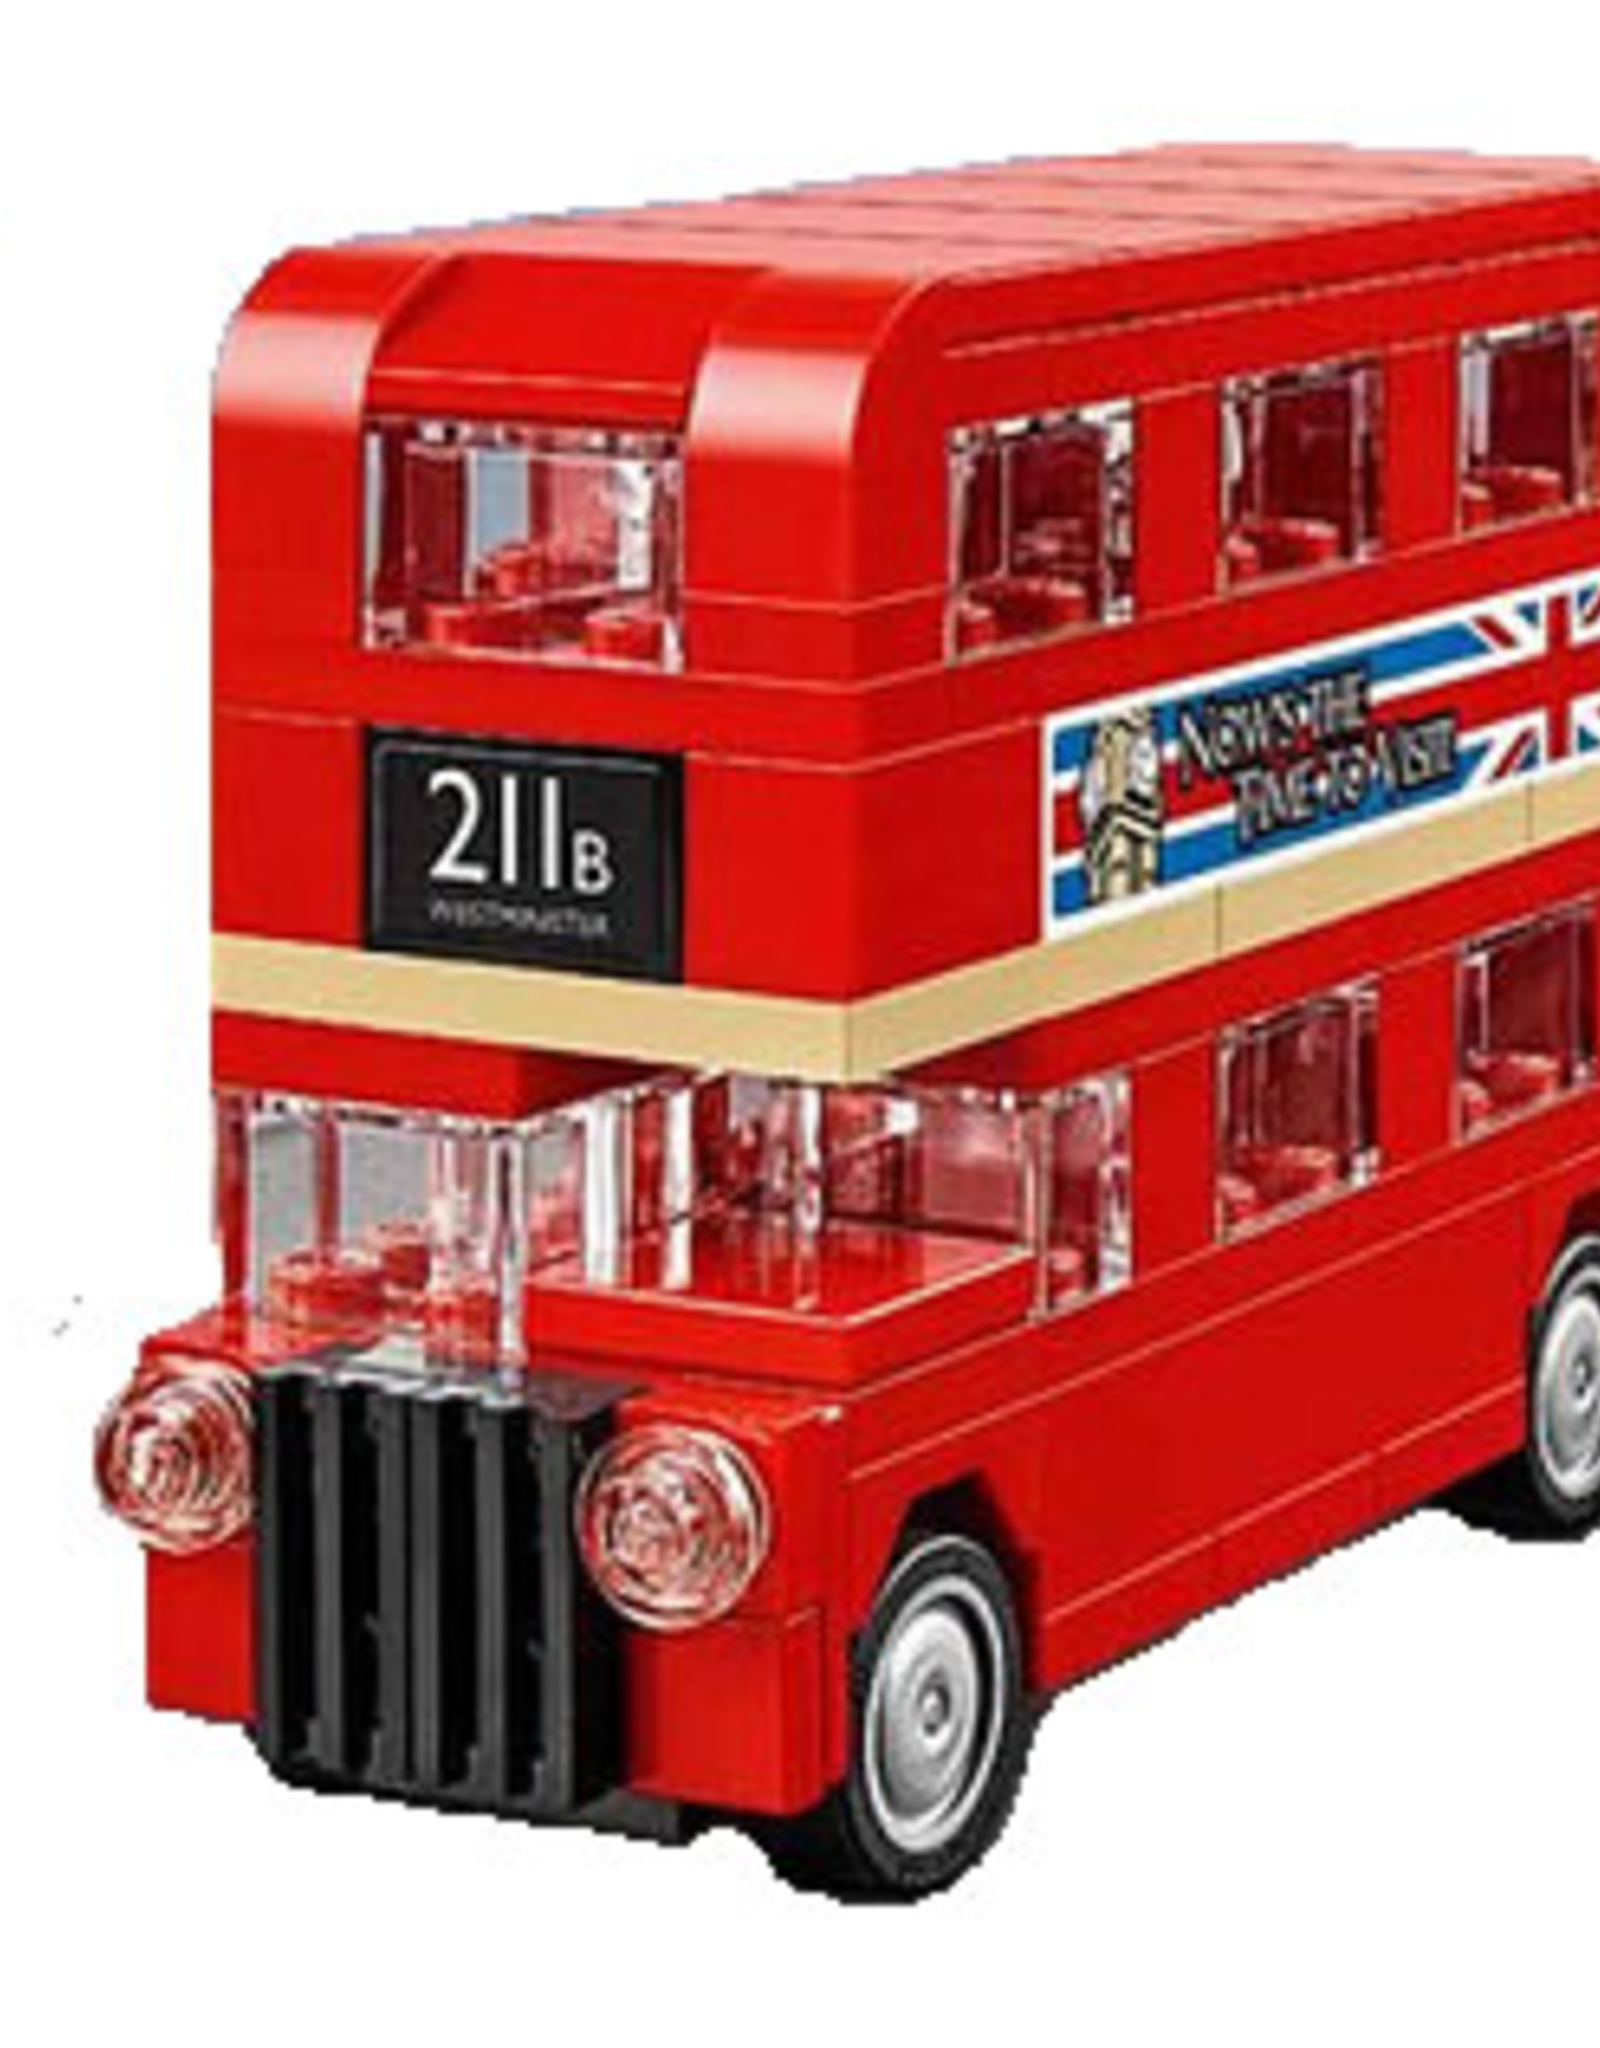 LEGO LEGO 40220 Mini London Bus CREATOR